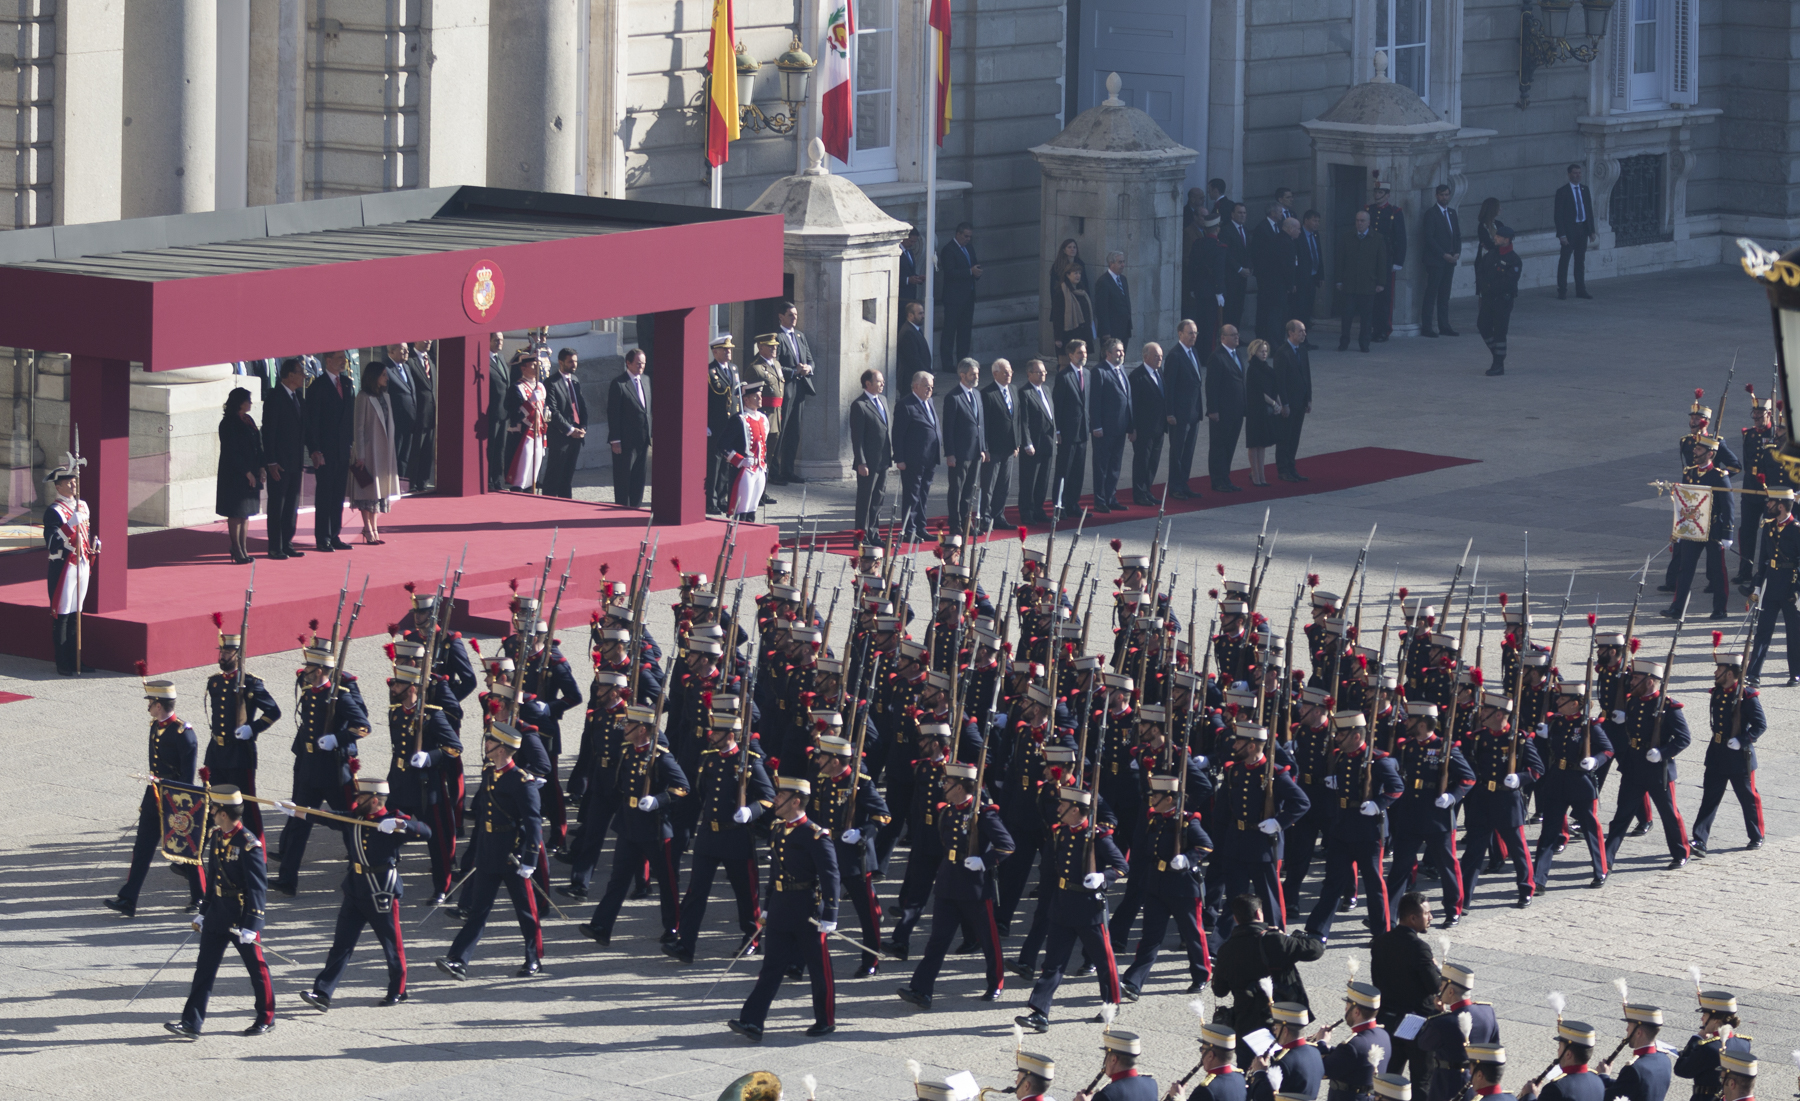 Detalle del desfile de las unidades a pie de la Guardia Real en el Palacio Real de Madrid